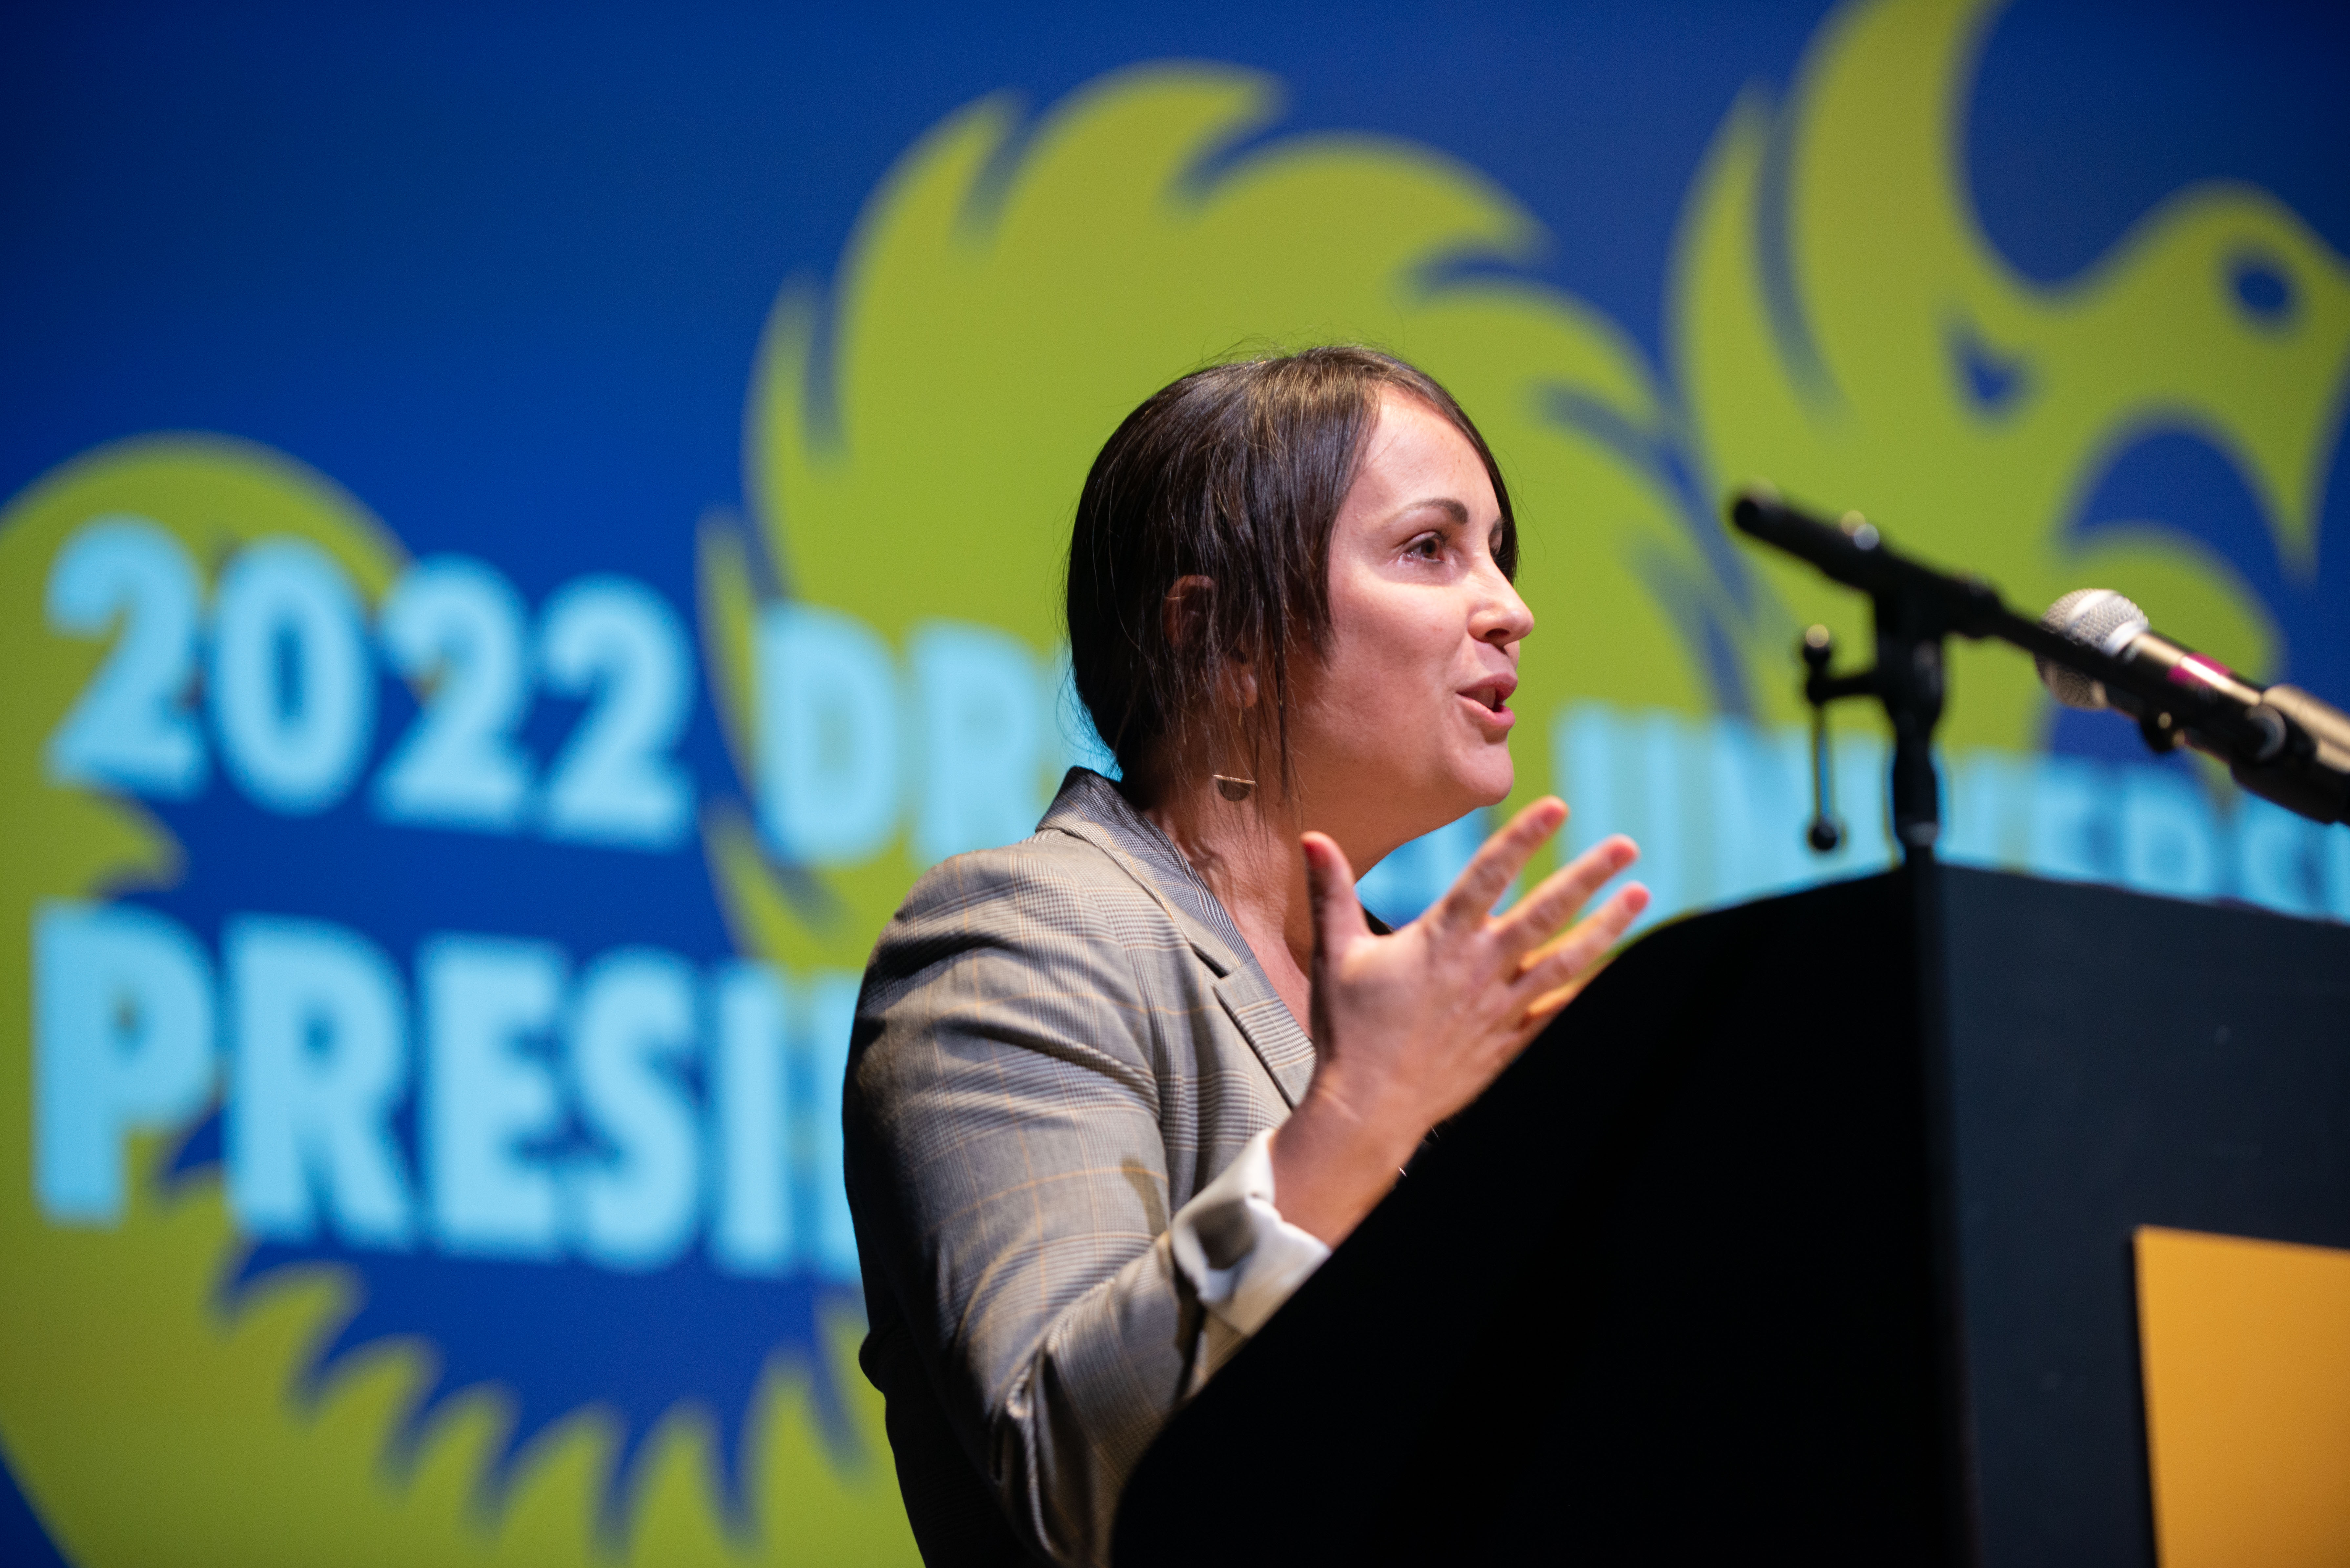 Johanna Inman at the 2022 President's Awards